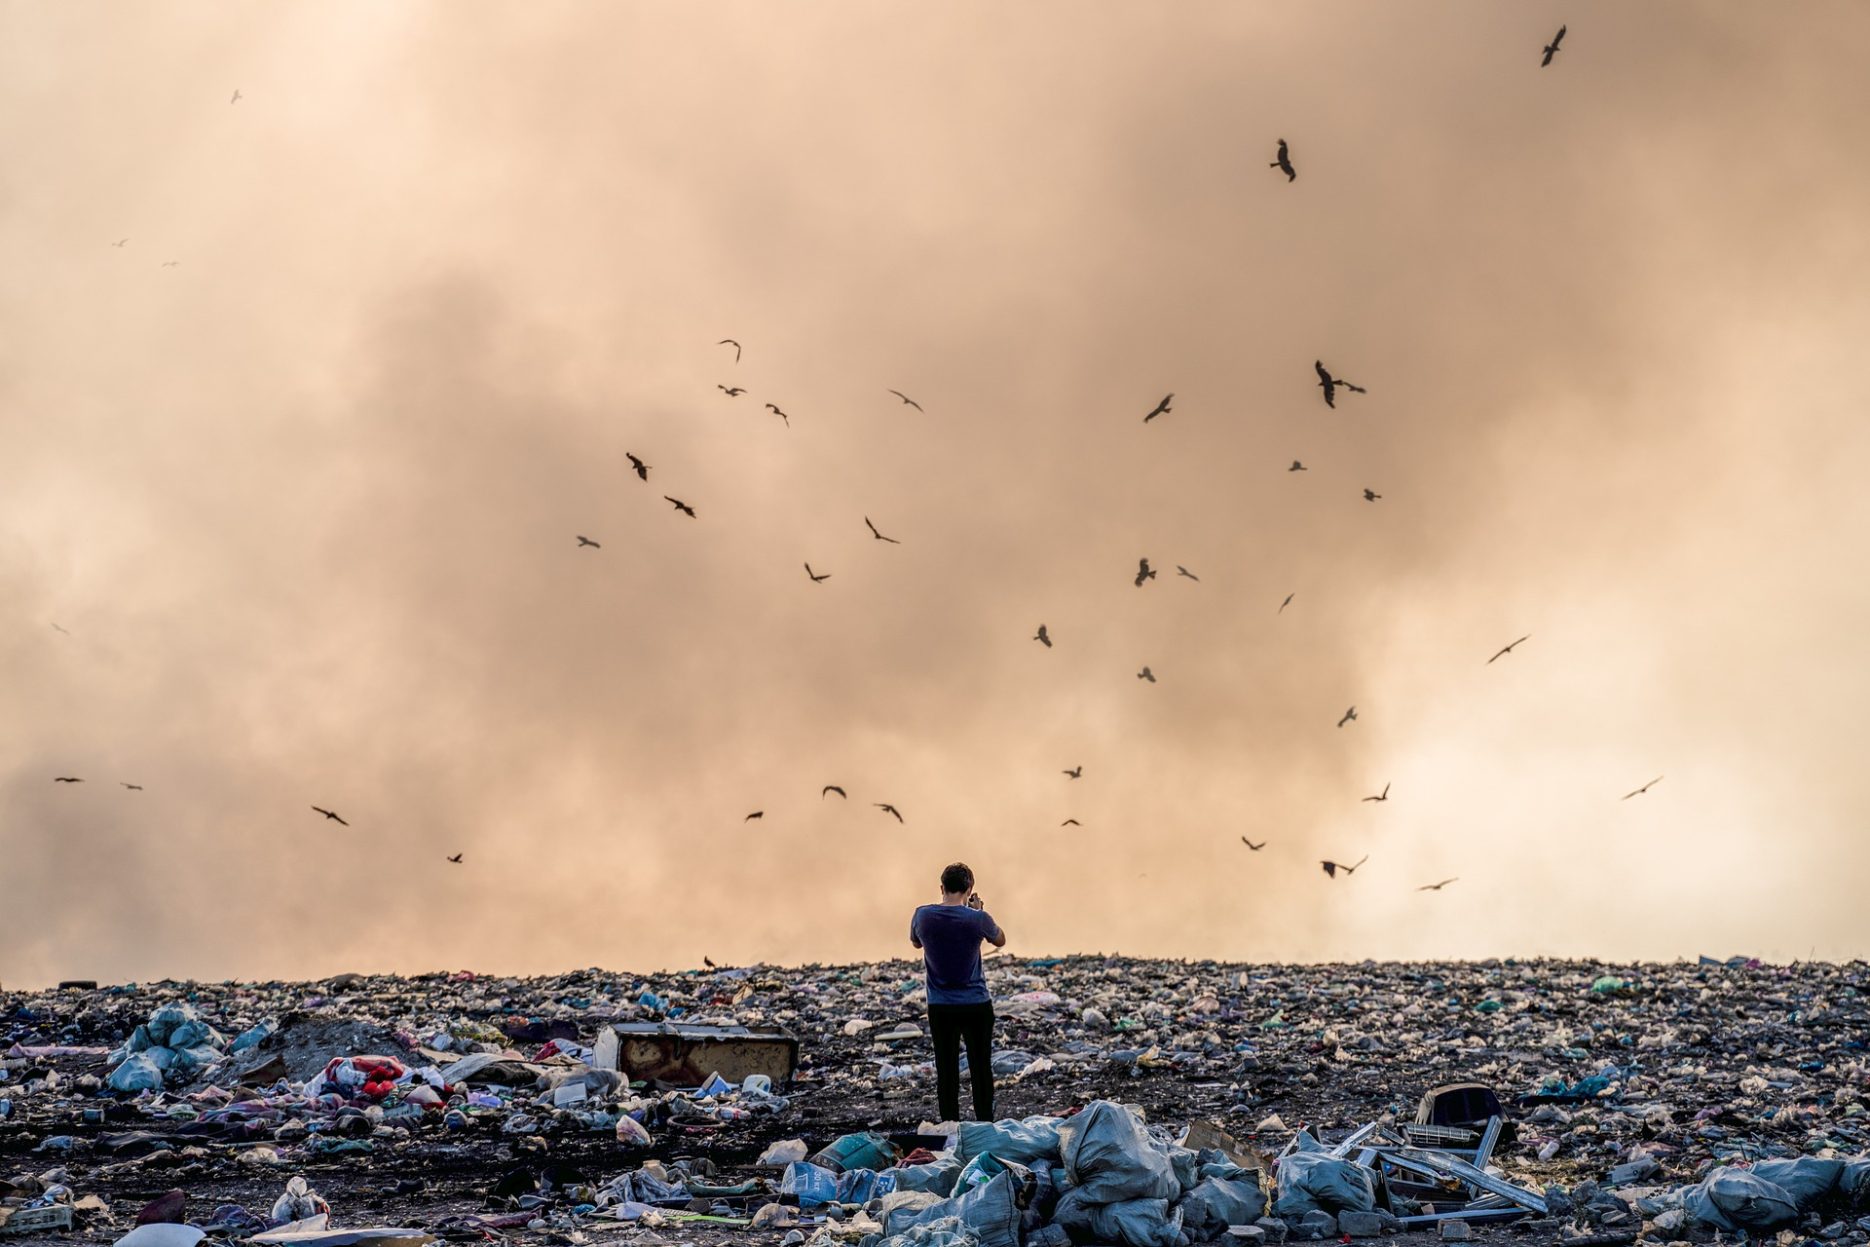 Das Bild zeigt eine große Müllhalde. Mittendrin steht eine Person und fotografiert; Vögel fliegen darüber.